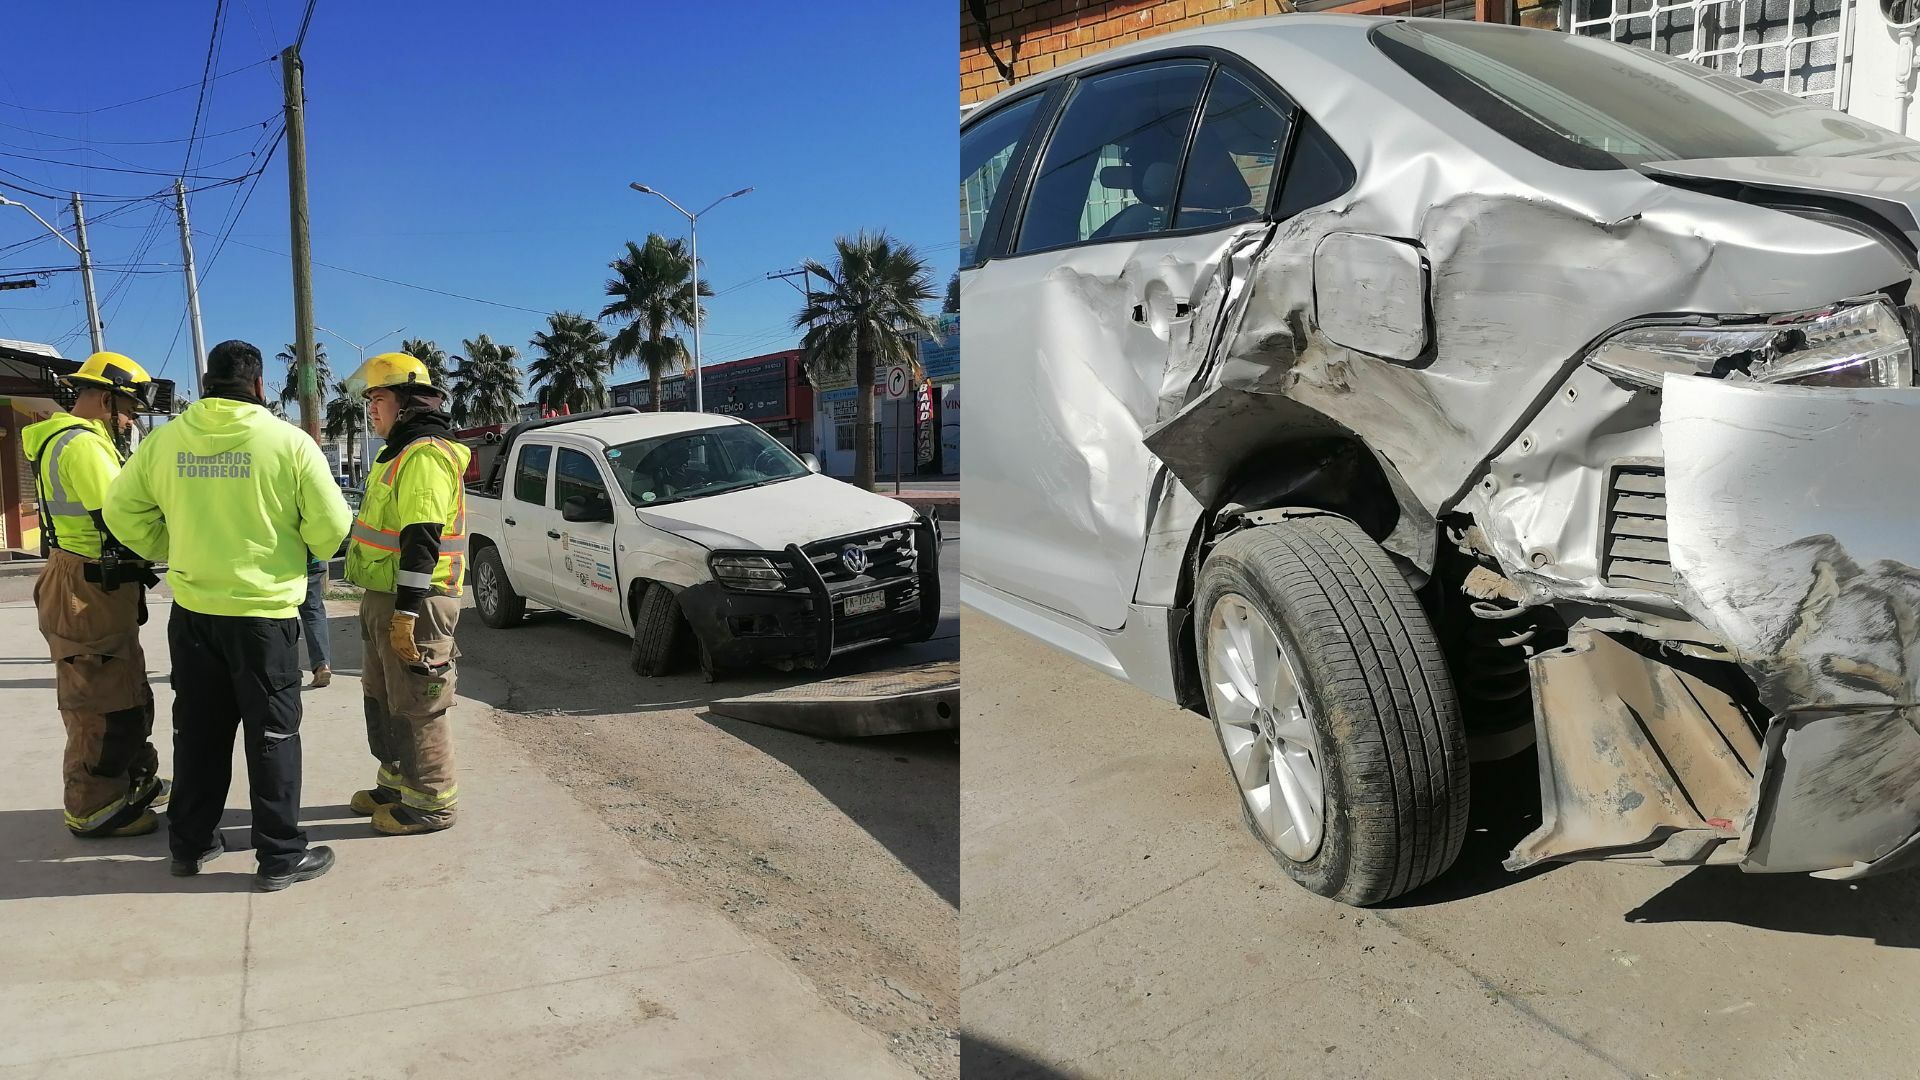 Daños materiales estimados en 70 mil pesos dejó un accidente registrado la mañana del sábado sobre bulevar El Tajito a la altura de la calle Zaragoza.